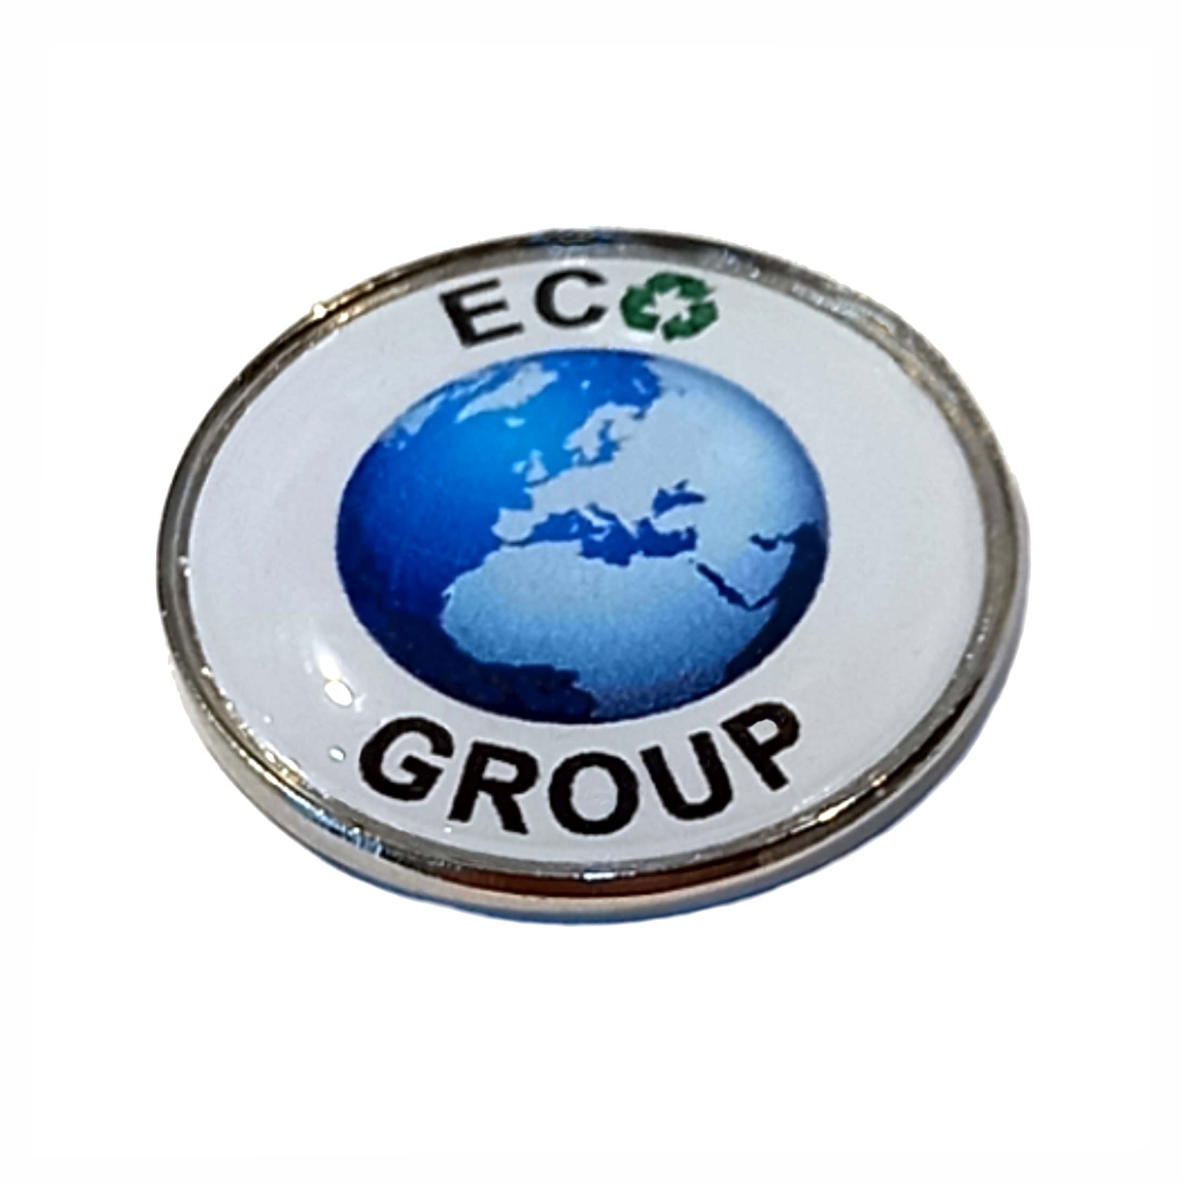 ECO GROUP round badge